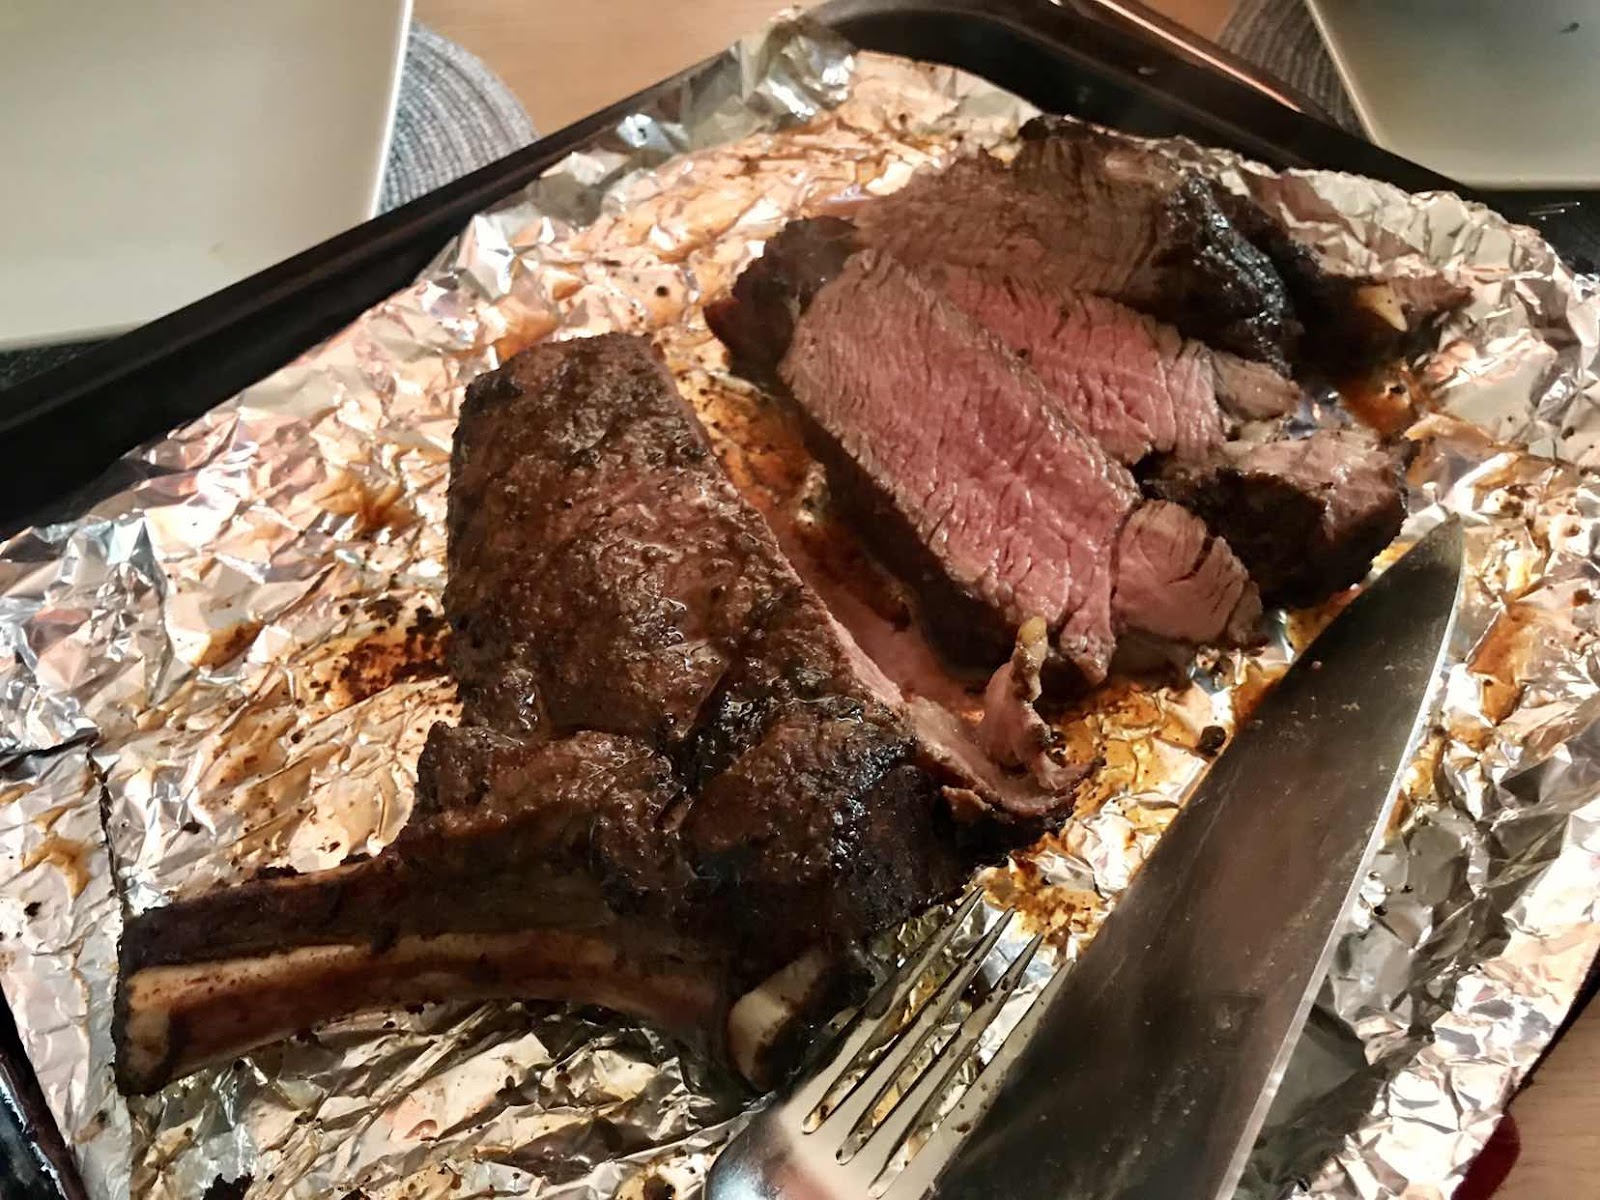 Texas-style barbecued bone-in rib-eye steak